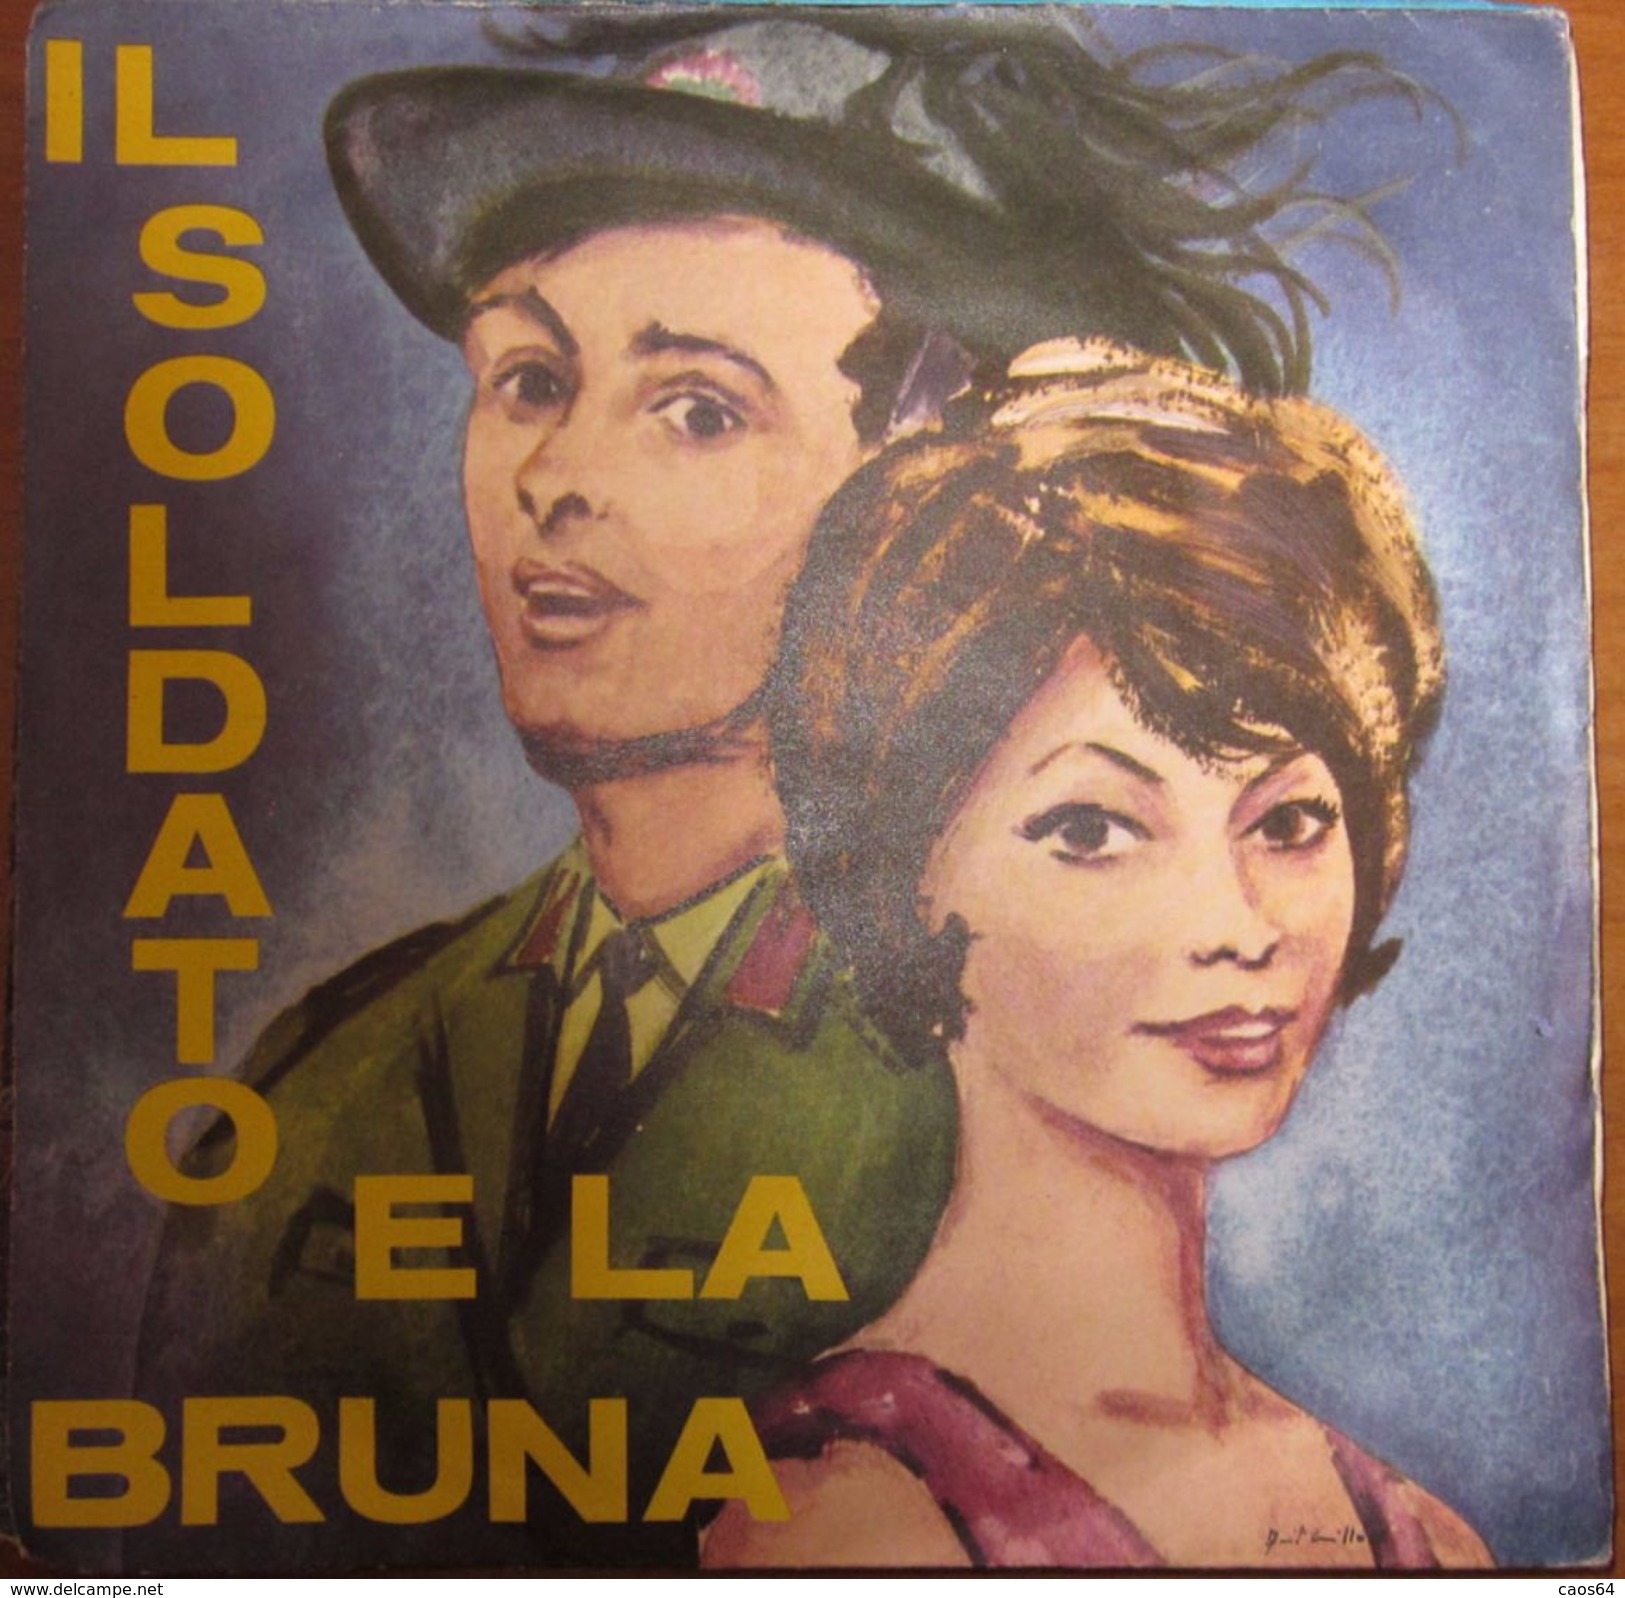 Franco Trincale  Dora Mormile - Il Soldato E La Bruna 7" - Country & Folk